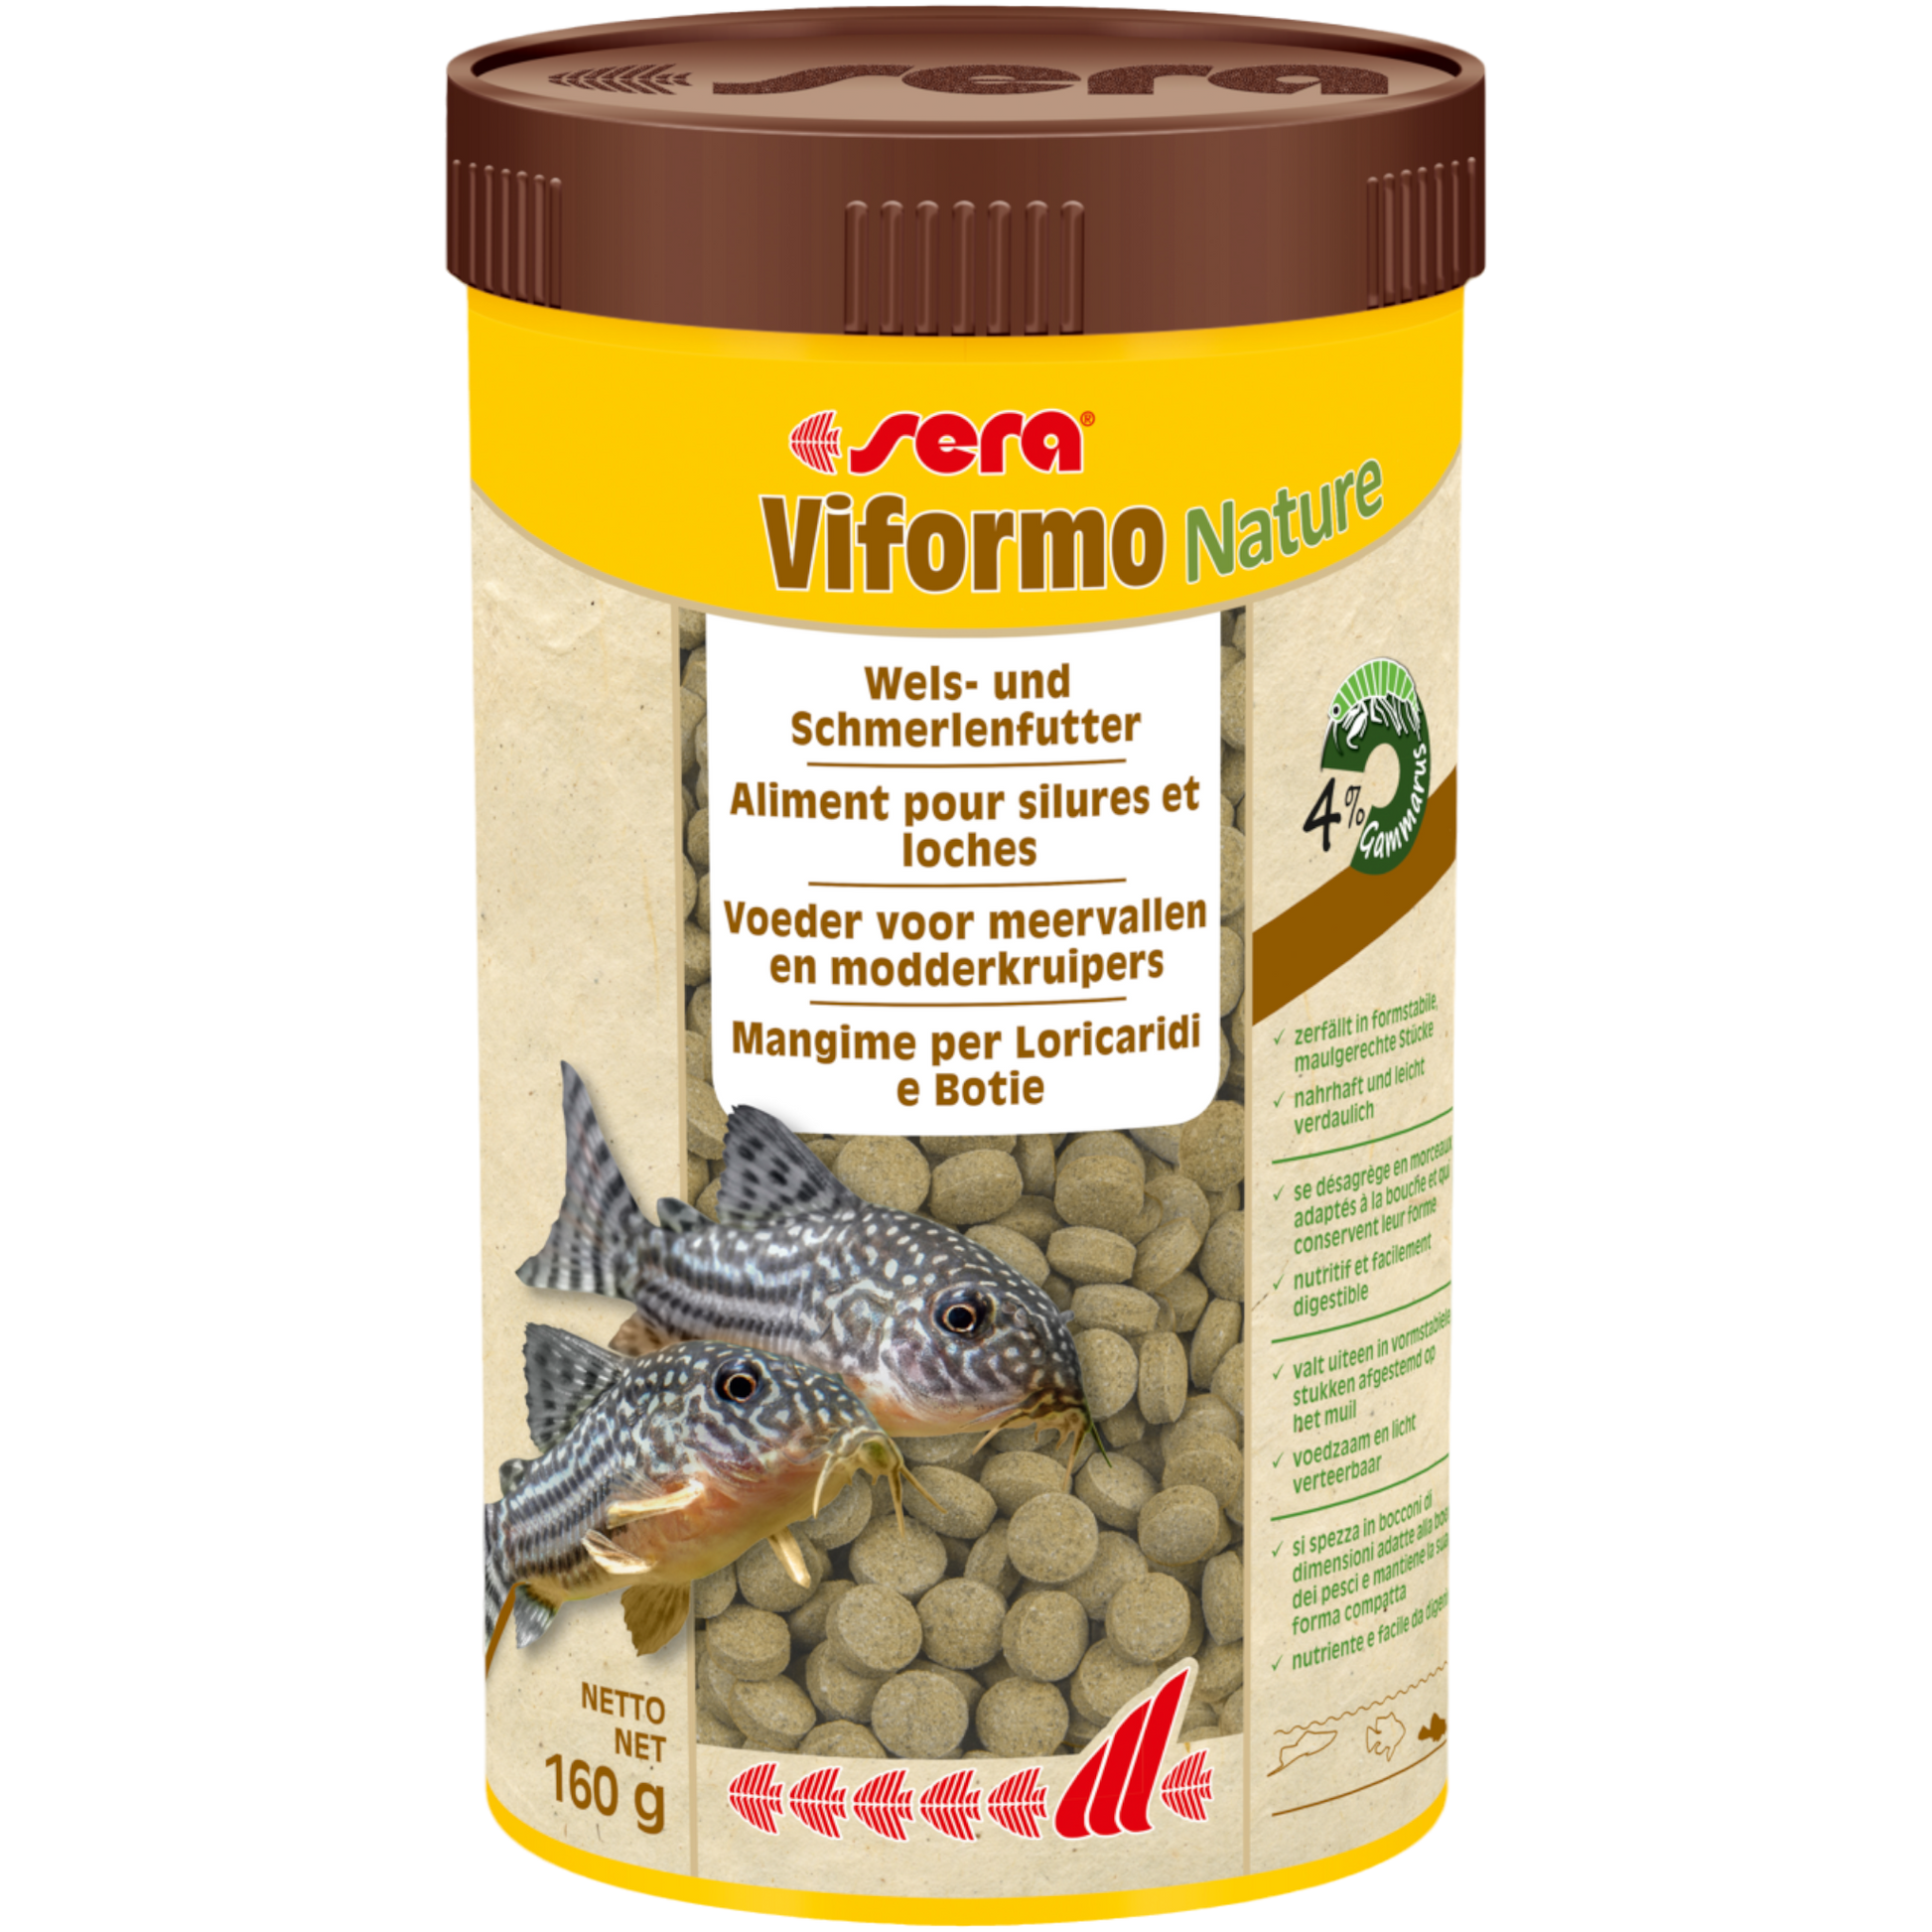 sera Viformo Nature ist das Welsfutter ohne Farb- und Konservierungsstoffe aus schonend hergestellten Tabs für gründelnde Welse und andere Bodenfische.